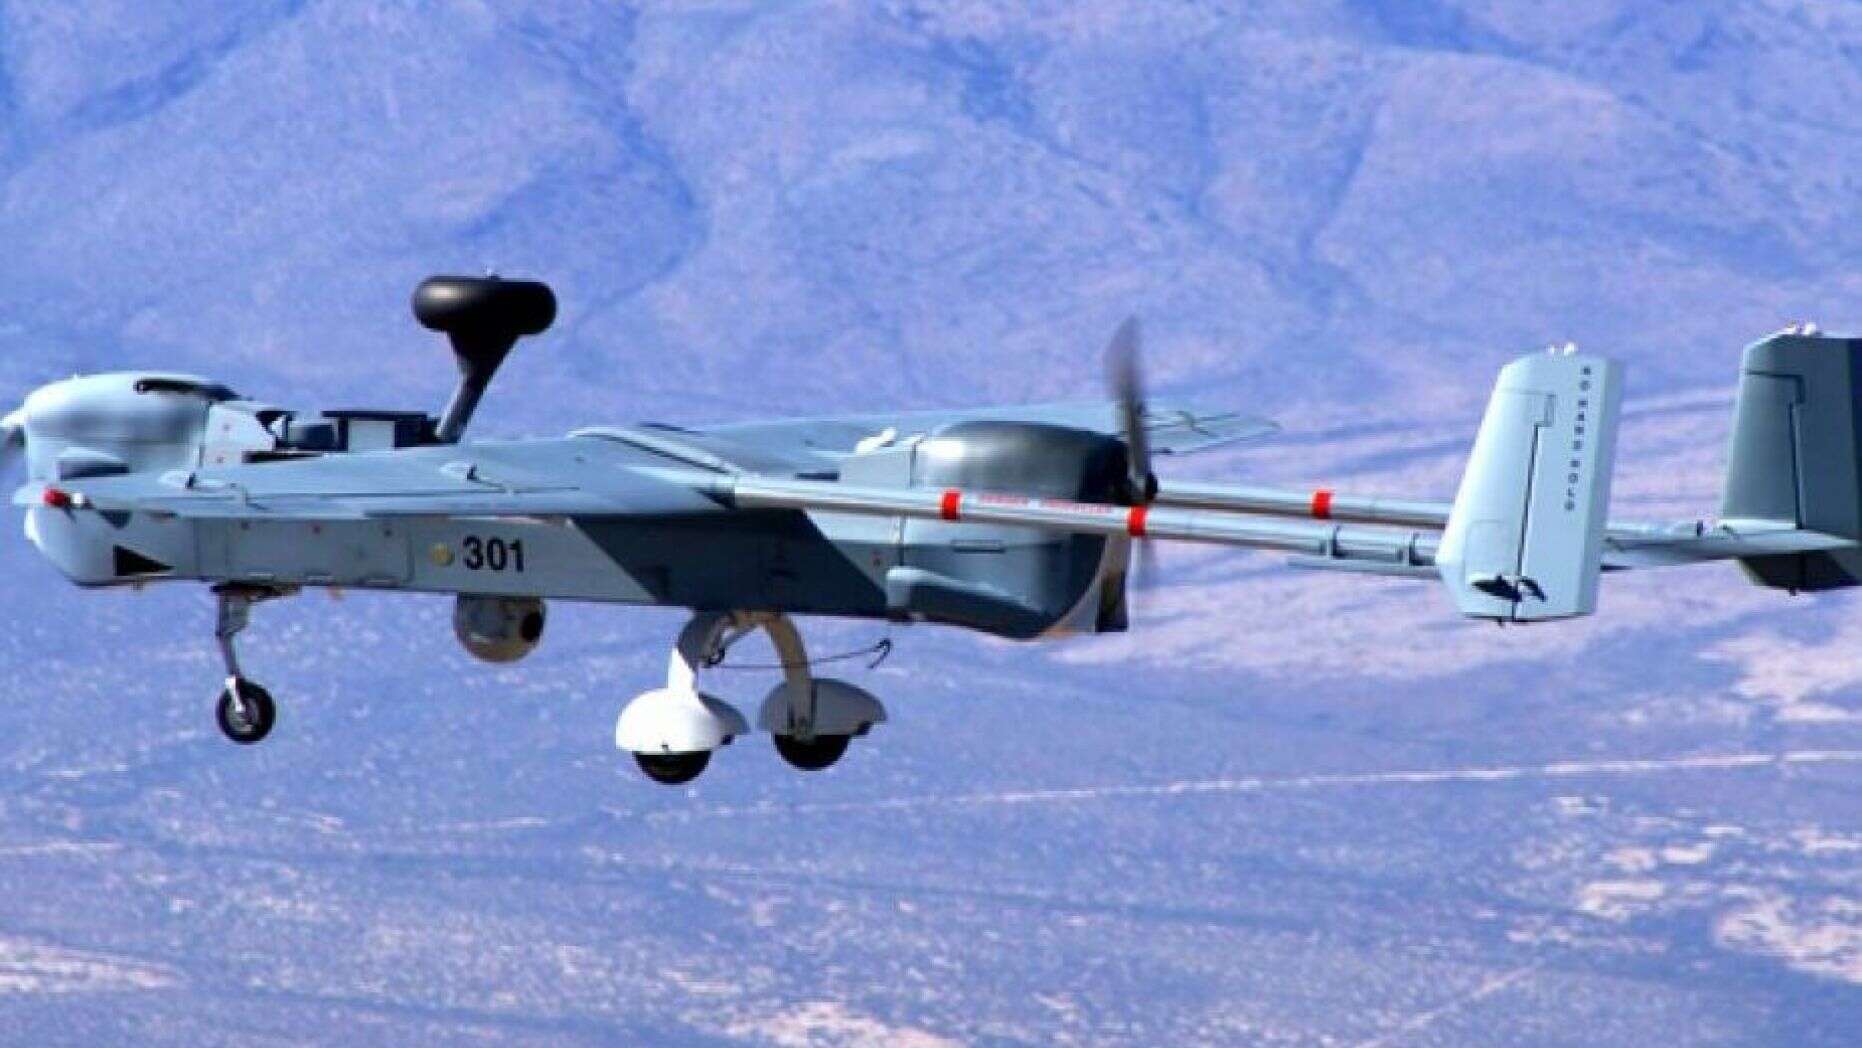 Ejercito norteamericano desarrolla nuevas tecnologías "mata-drones"